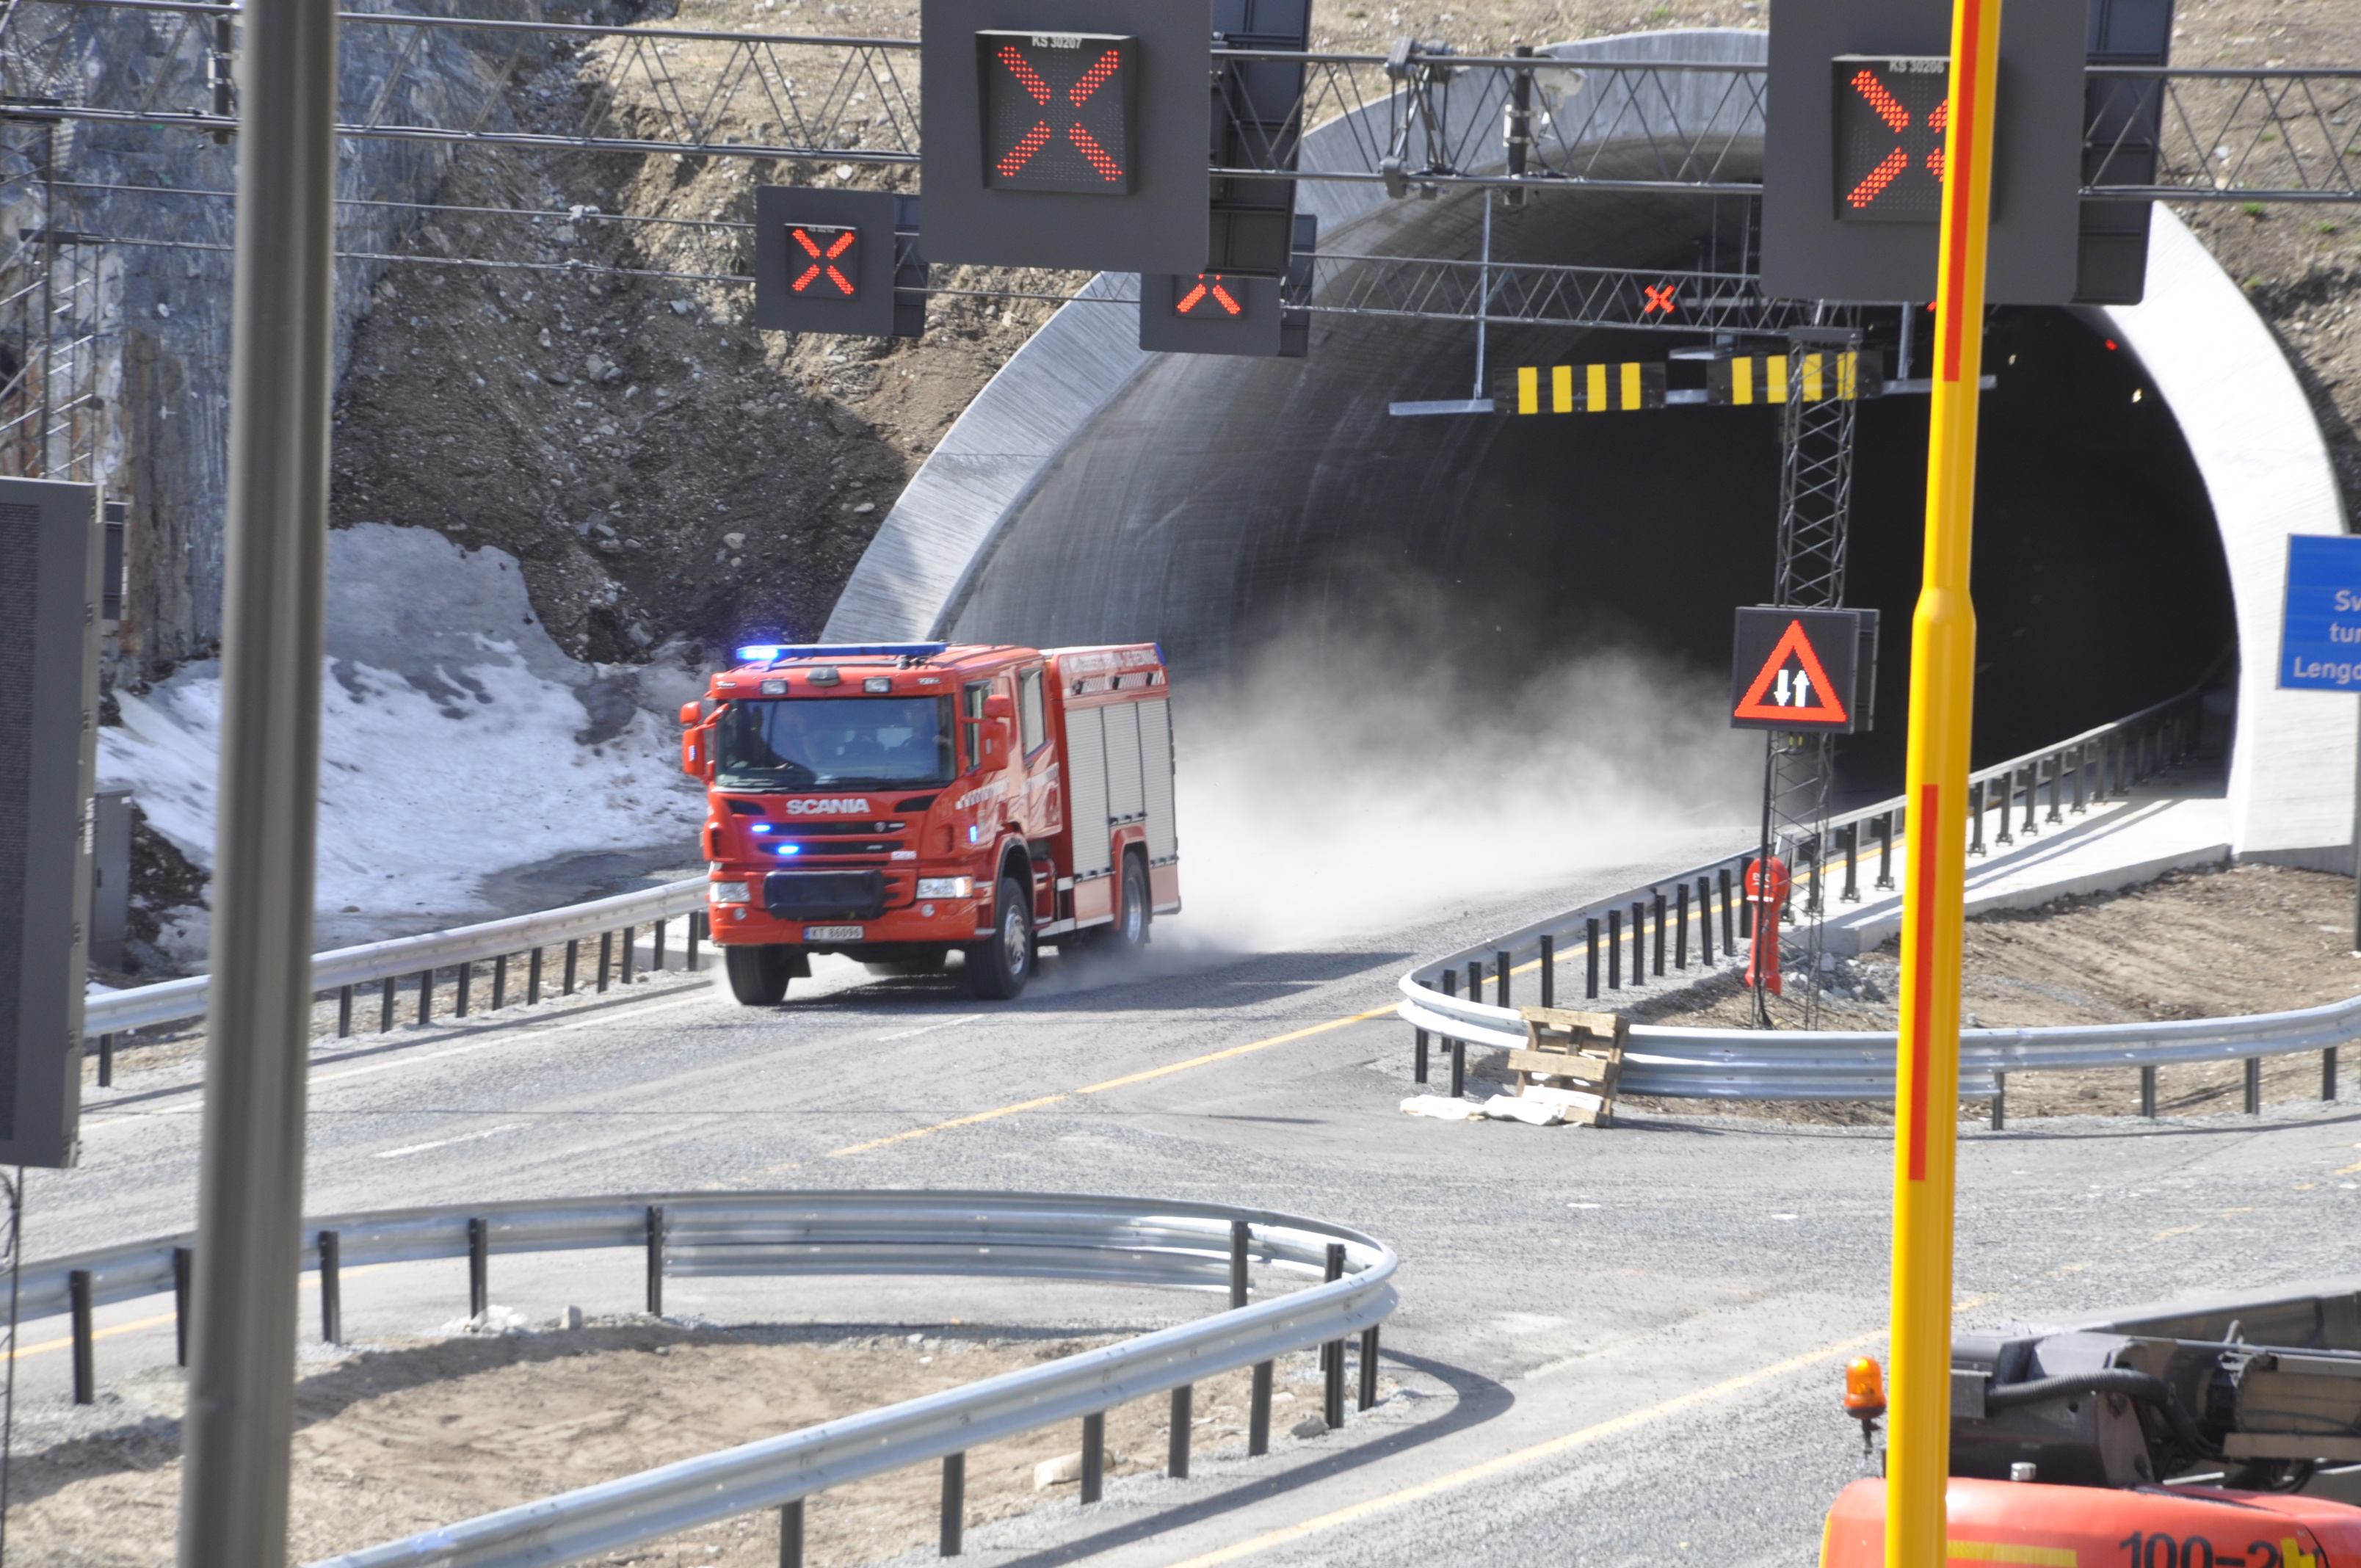 Utrykningsøvelse i Svartåstunnelen, viktig å bruke tunnelenes nødtelefoner. (Foto: Kjell Wold)